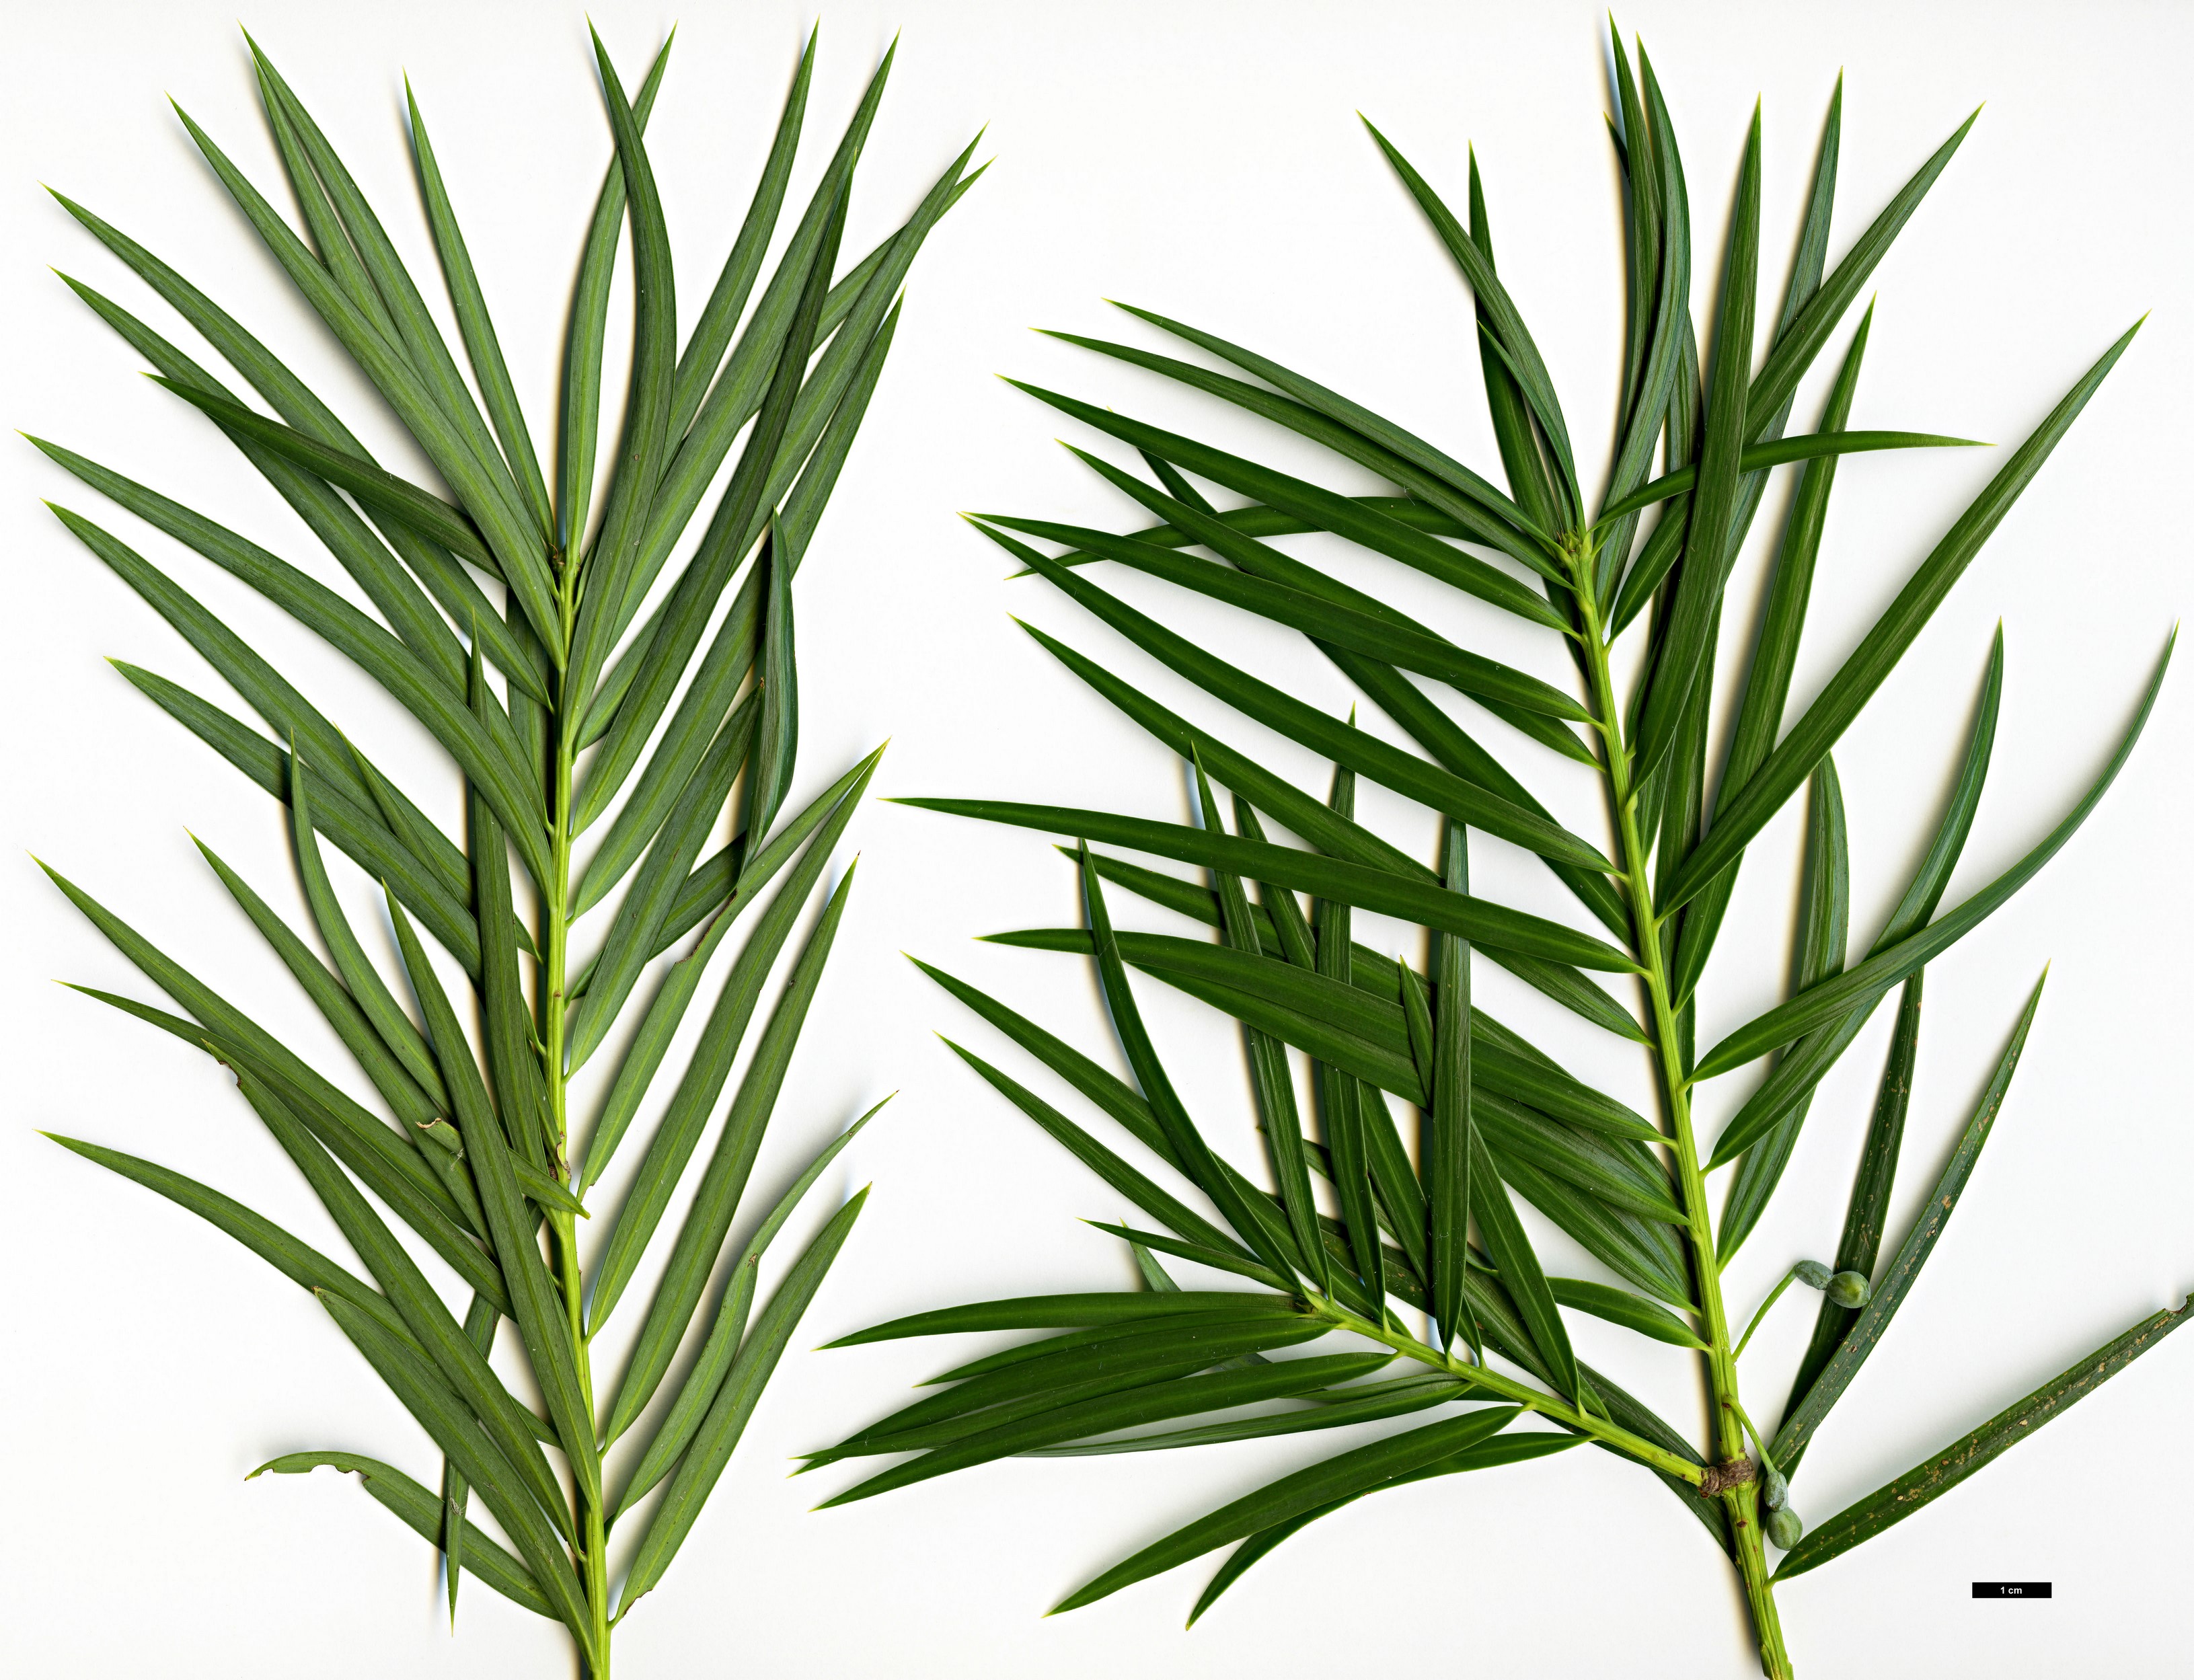 High resolution image: Family: Podocarpaceae - Genus: Podocarpus - Taxon: parlatorei